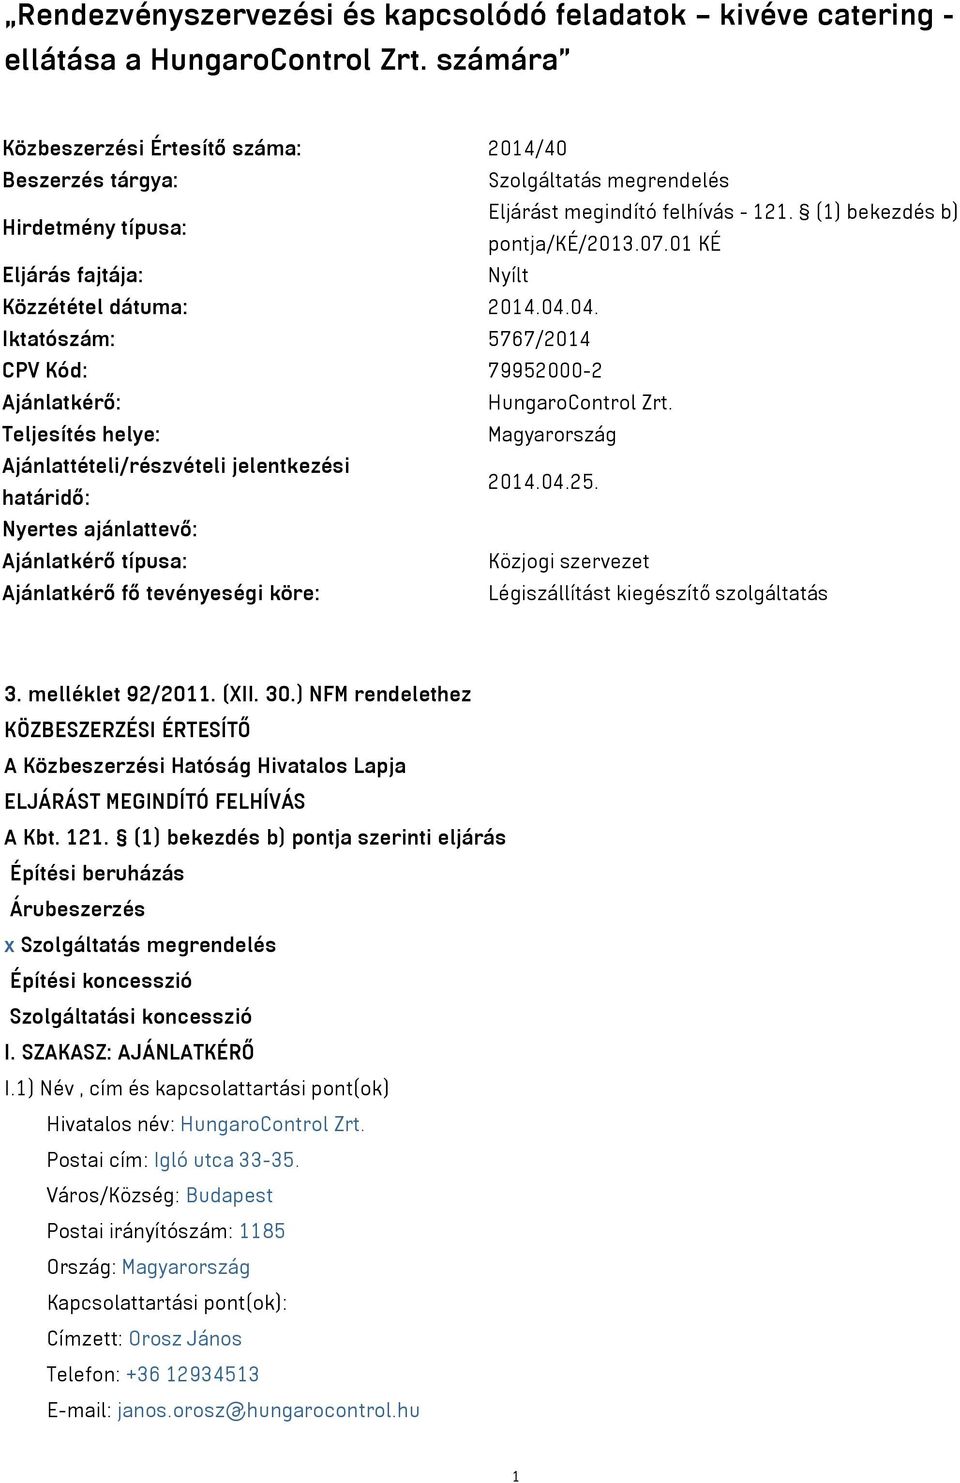 01 KÉ Eljárás fajtája: Nyílt Közzététel dátuma: 2014.04.04. Iktatószám: 5767/2014 CPV Kód: 79952000-2 Ajánlatkérő: HungaroControl Zrt.